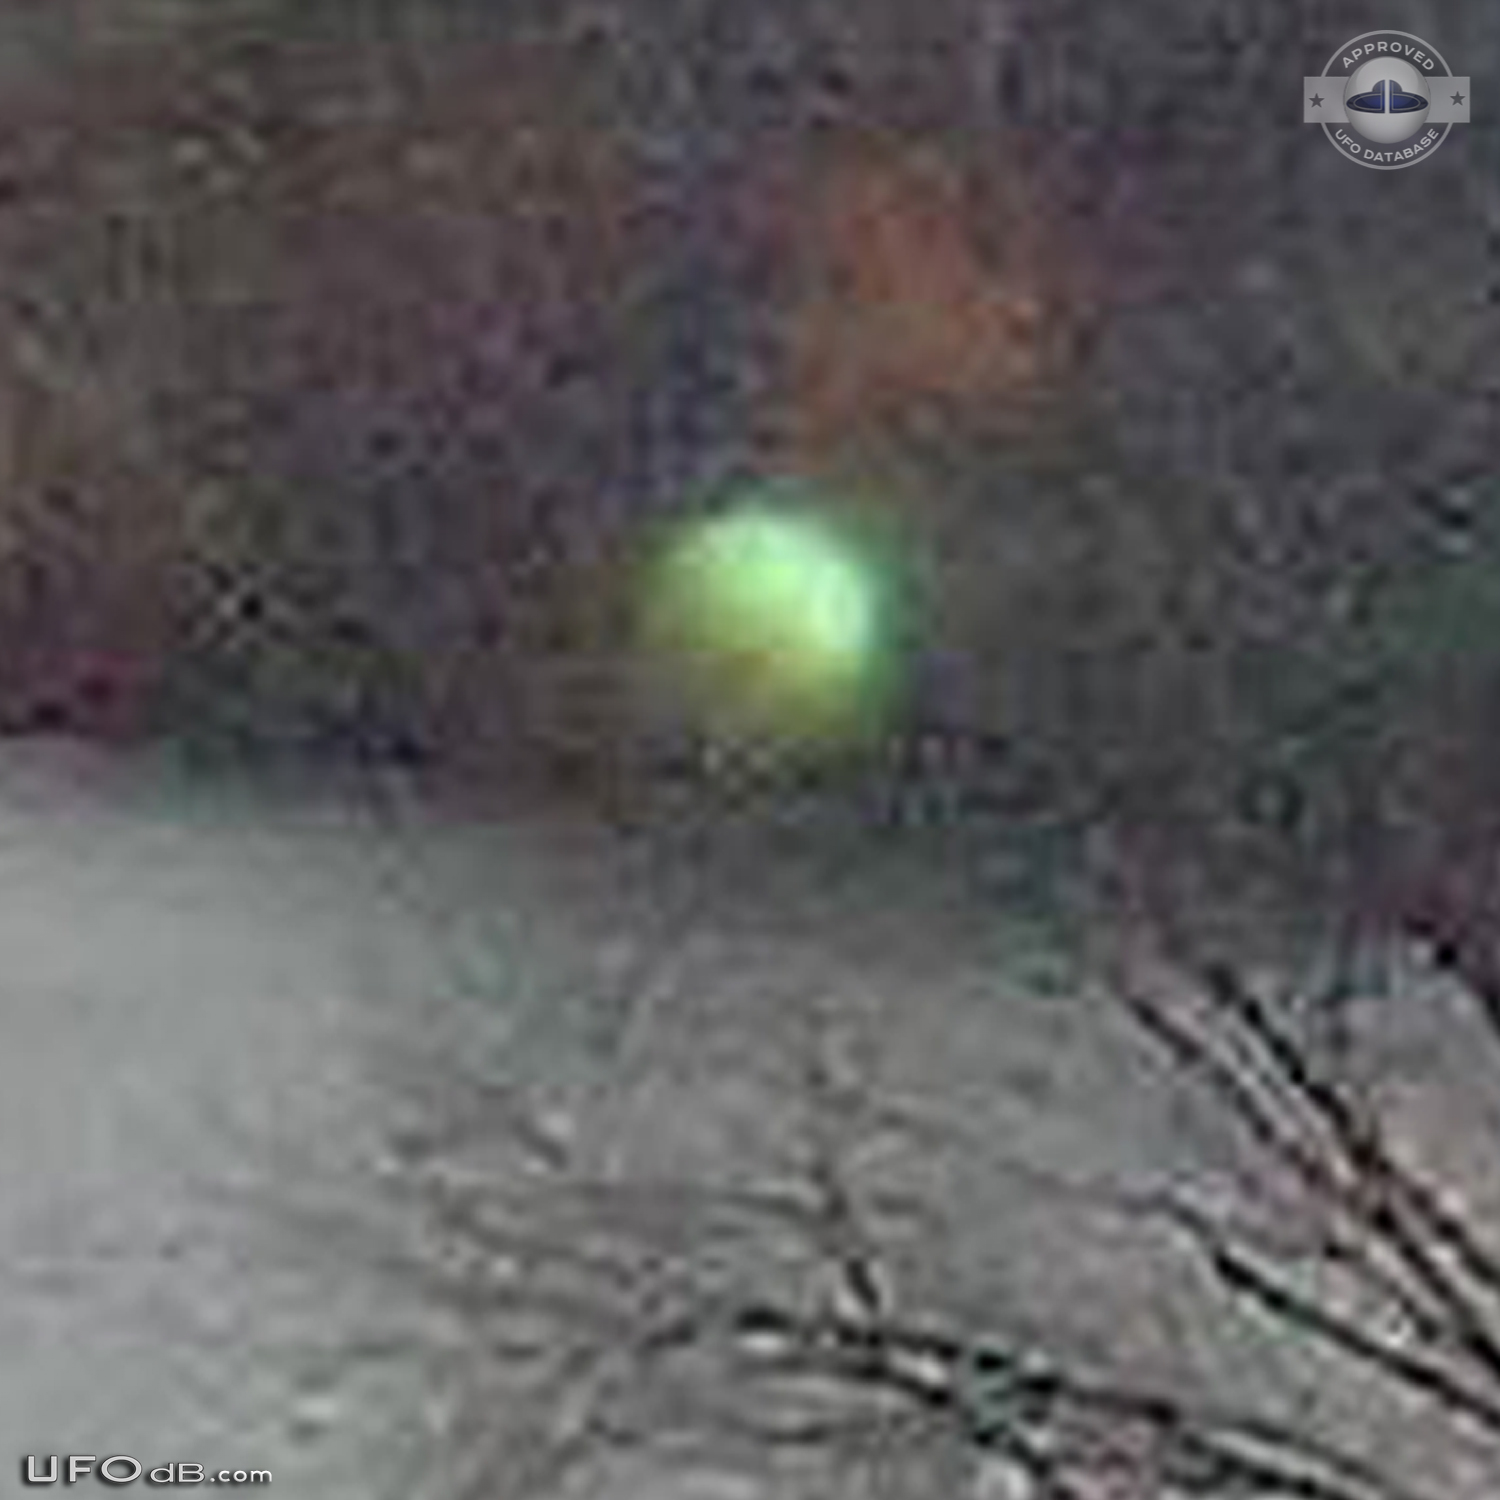 Green Orb UFO seen near greenway in Roanoke, Virginia 2013 UFO Picture #545-4